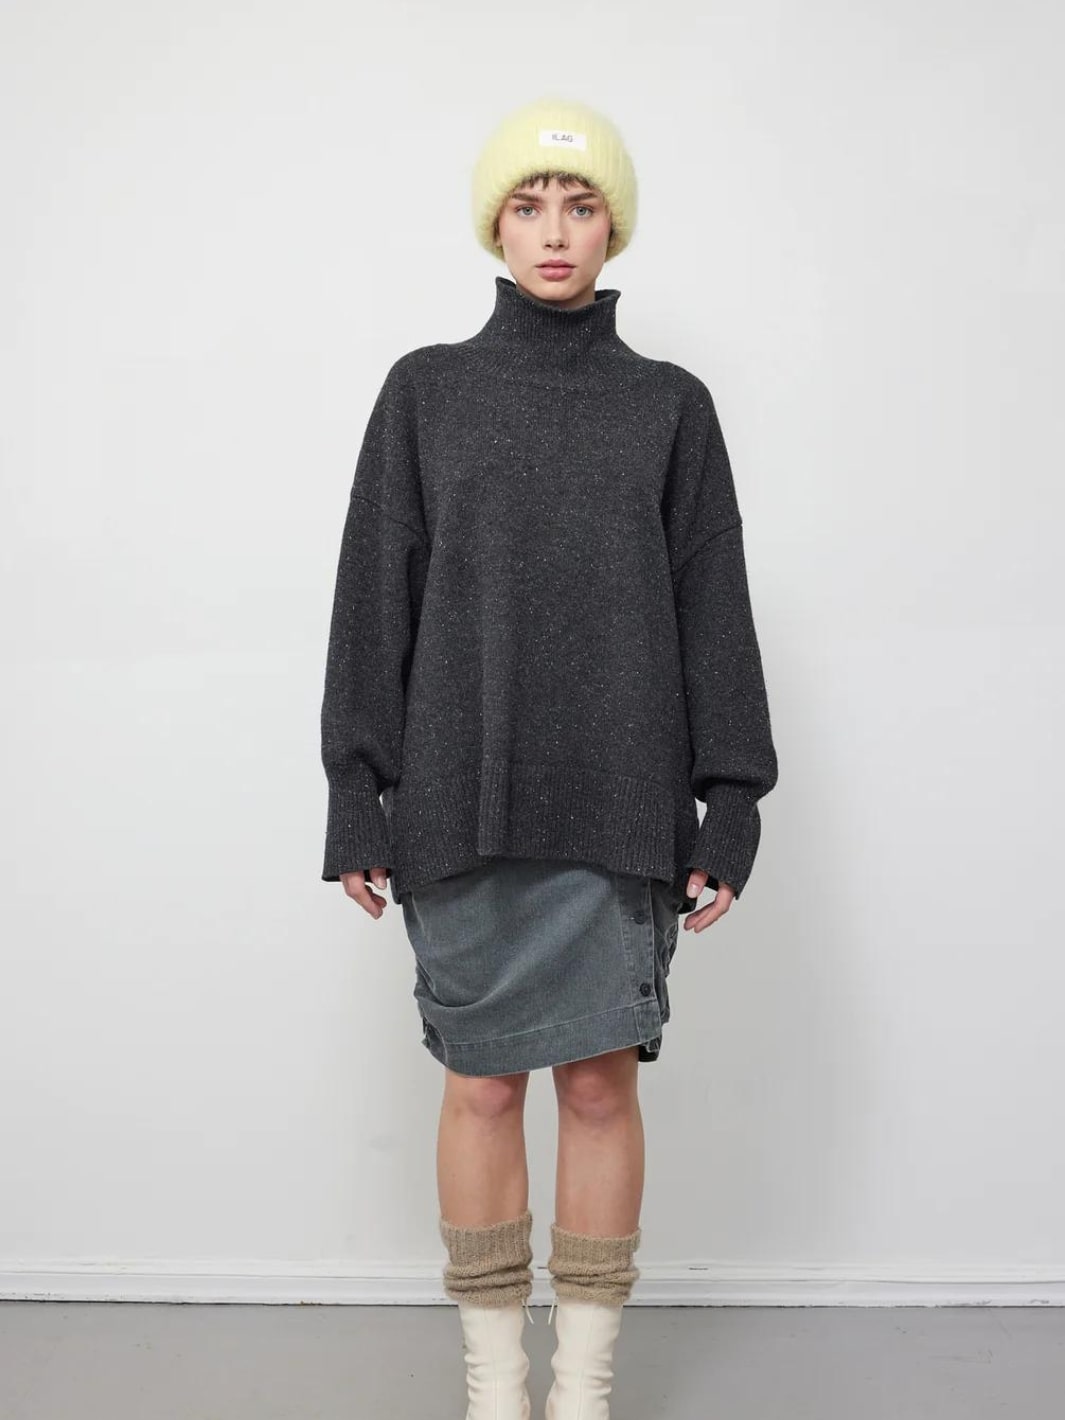 Ilag Knit Genser | Frisk Sweater